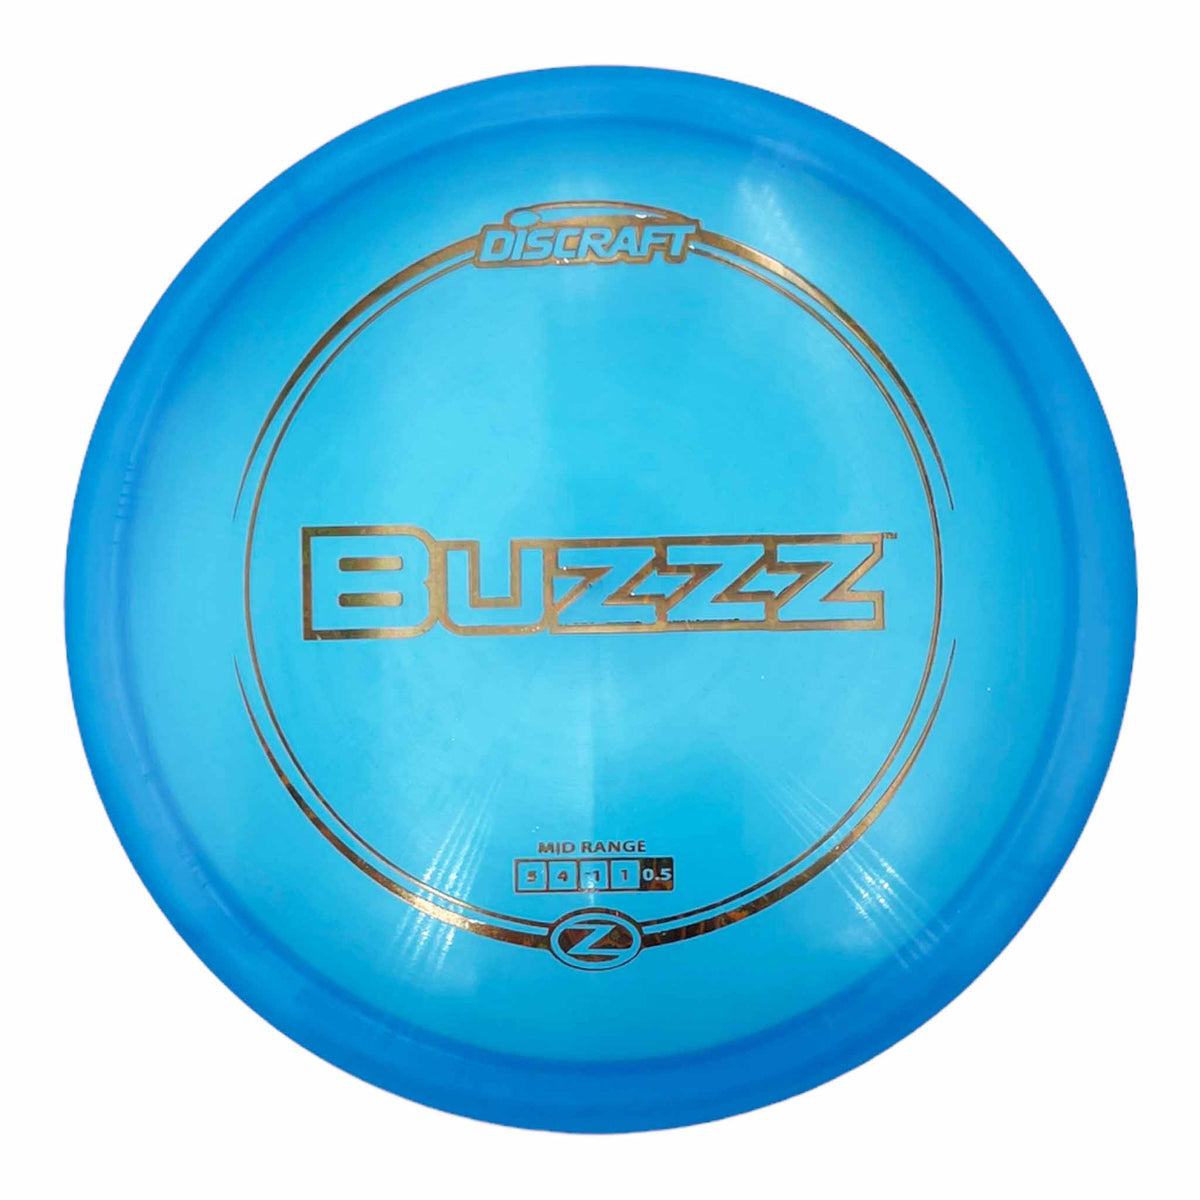 Discraft Z Line Buzzz midrange - Blue / Bronze